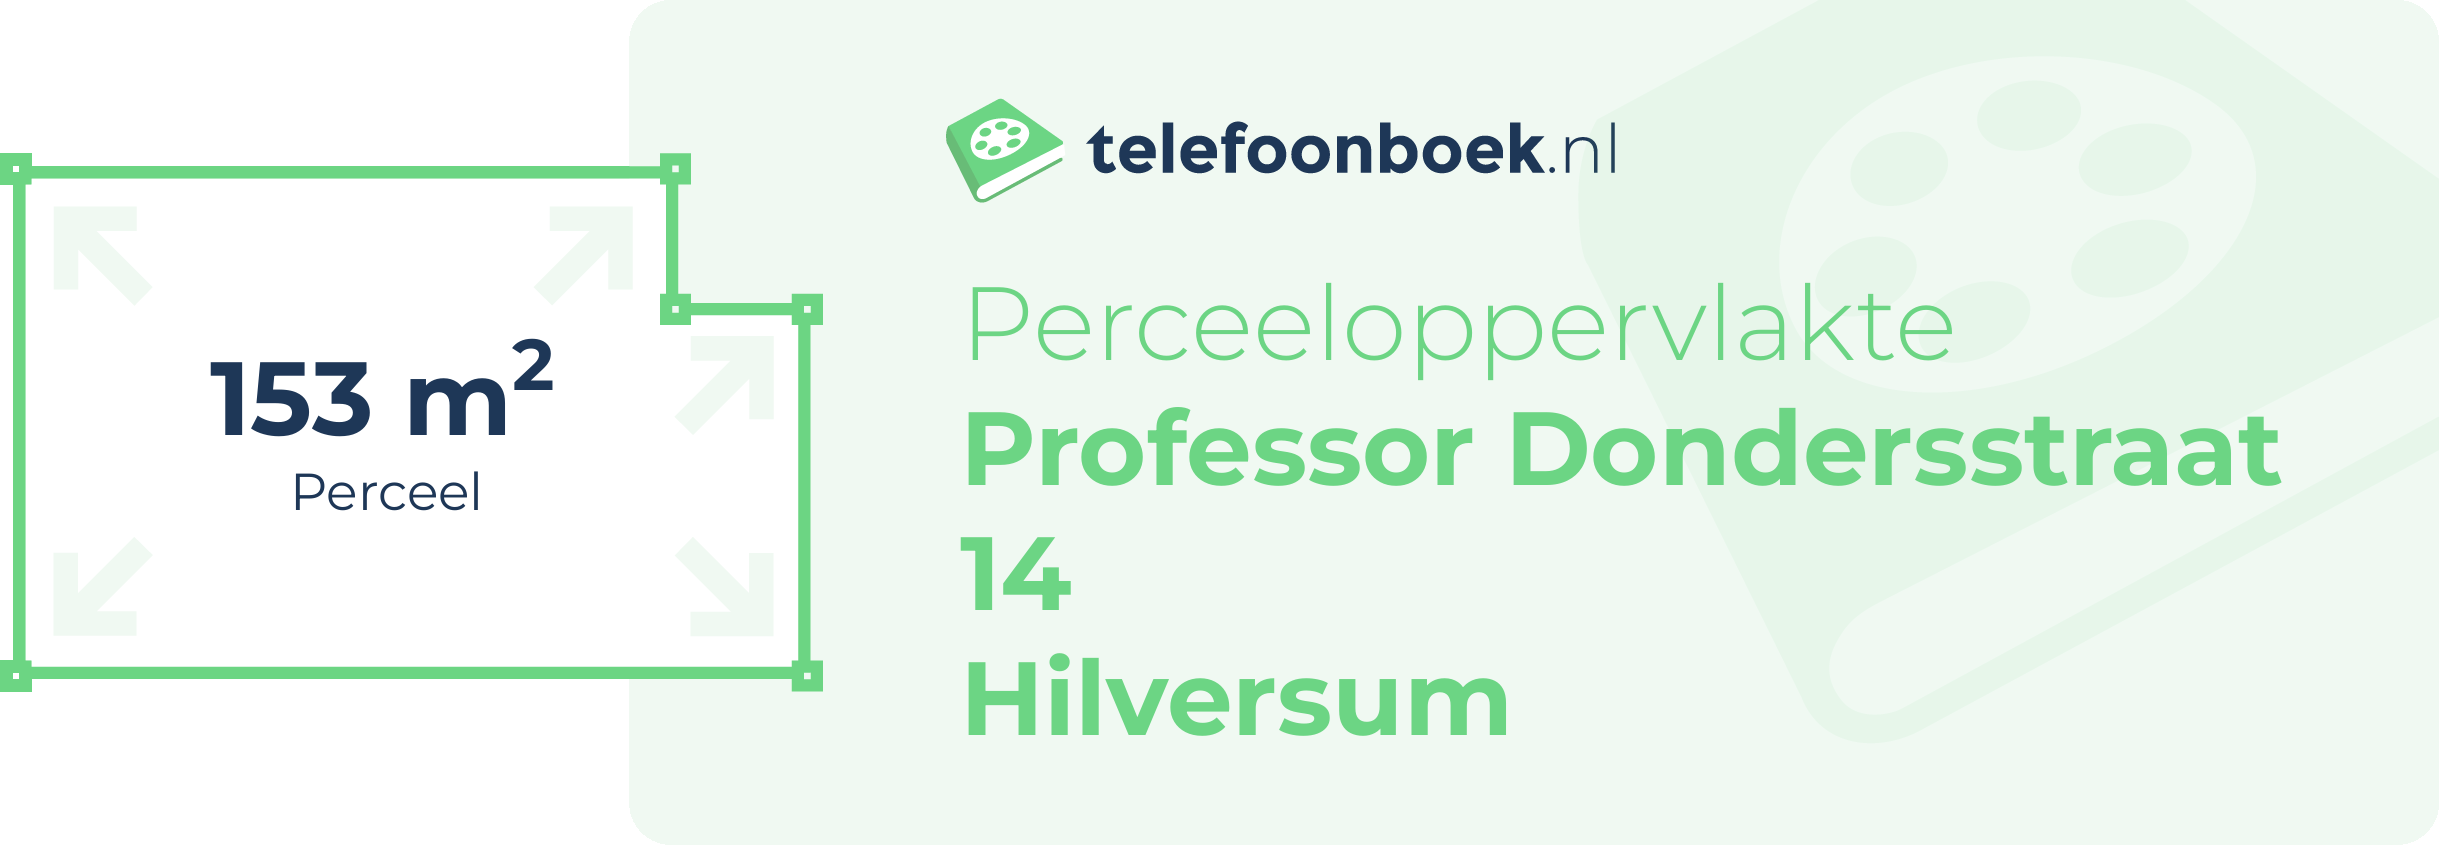 Perceeloppervlakte Professor Dondersstraat 14 Hilversum